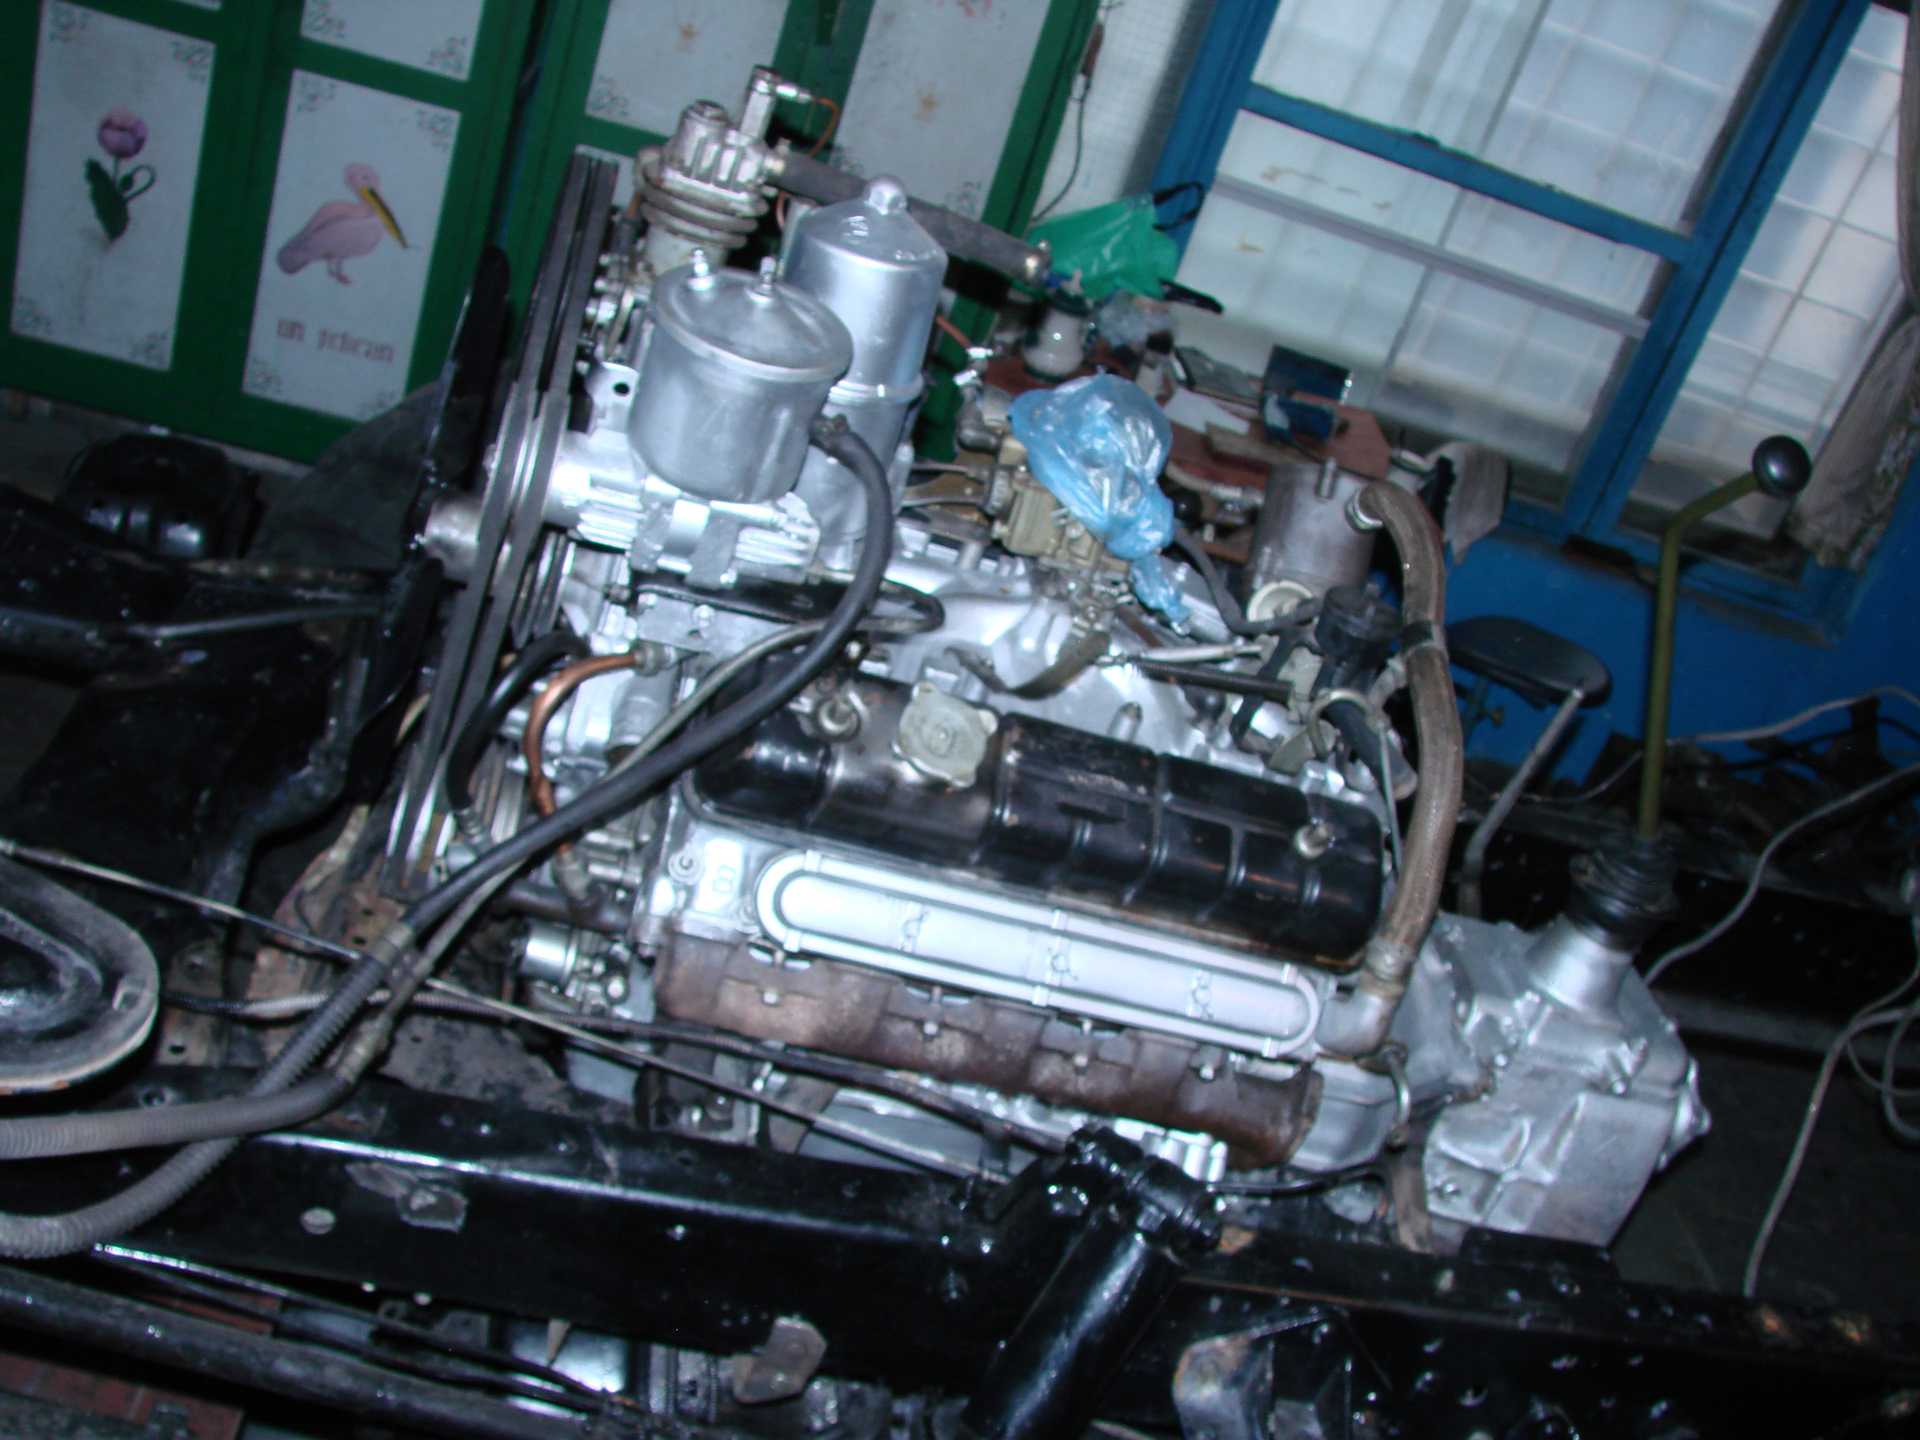 Основные технические характеристики силового агрегата ГАЗ 66 Описание обслуживания и ремонта двигателя